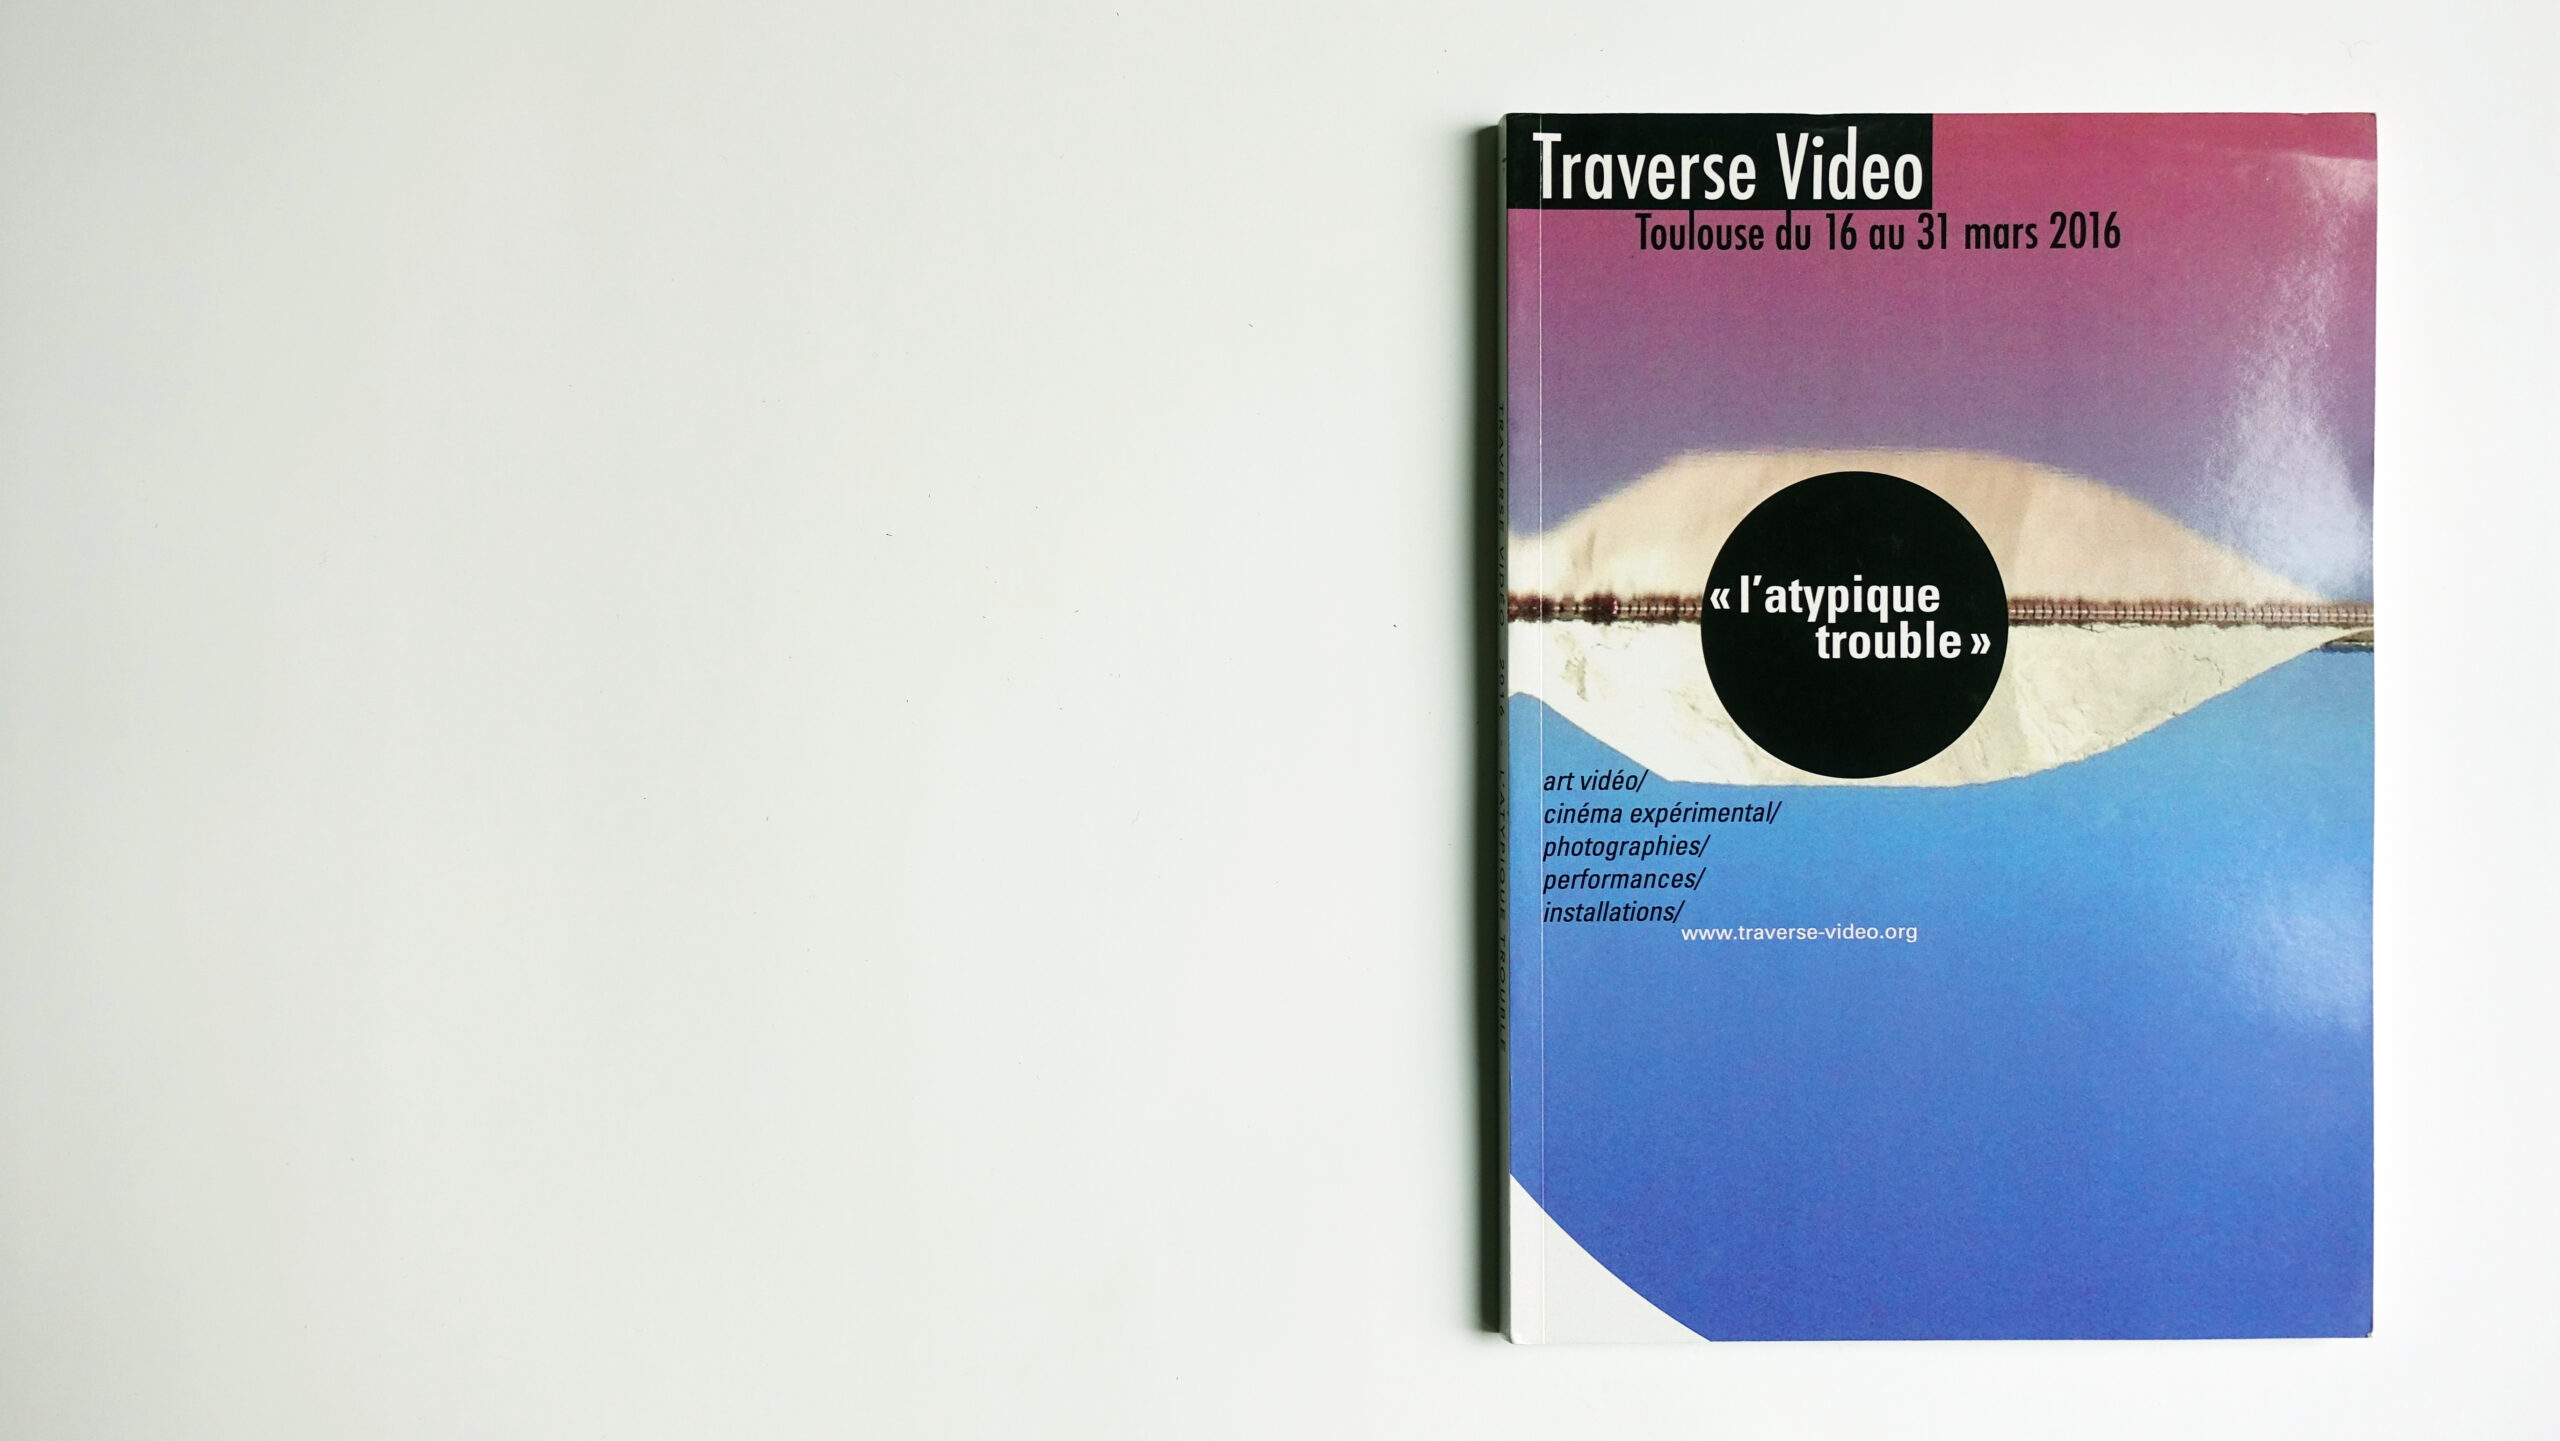 Traverse Vidéo, 19ème édition - Du 16 au 31 mars 2016 - "L'atypique trouble" traverse-video.org